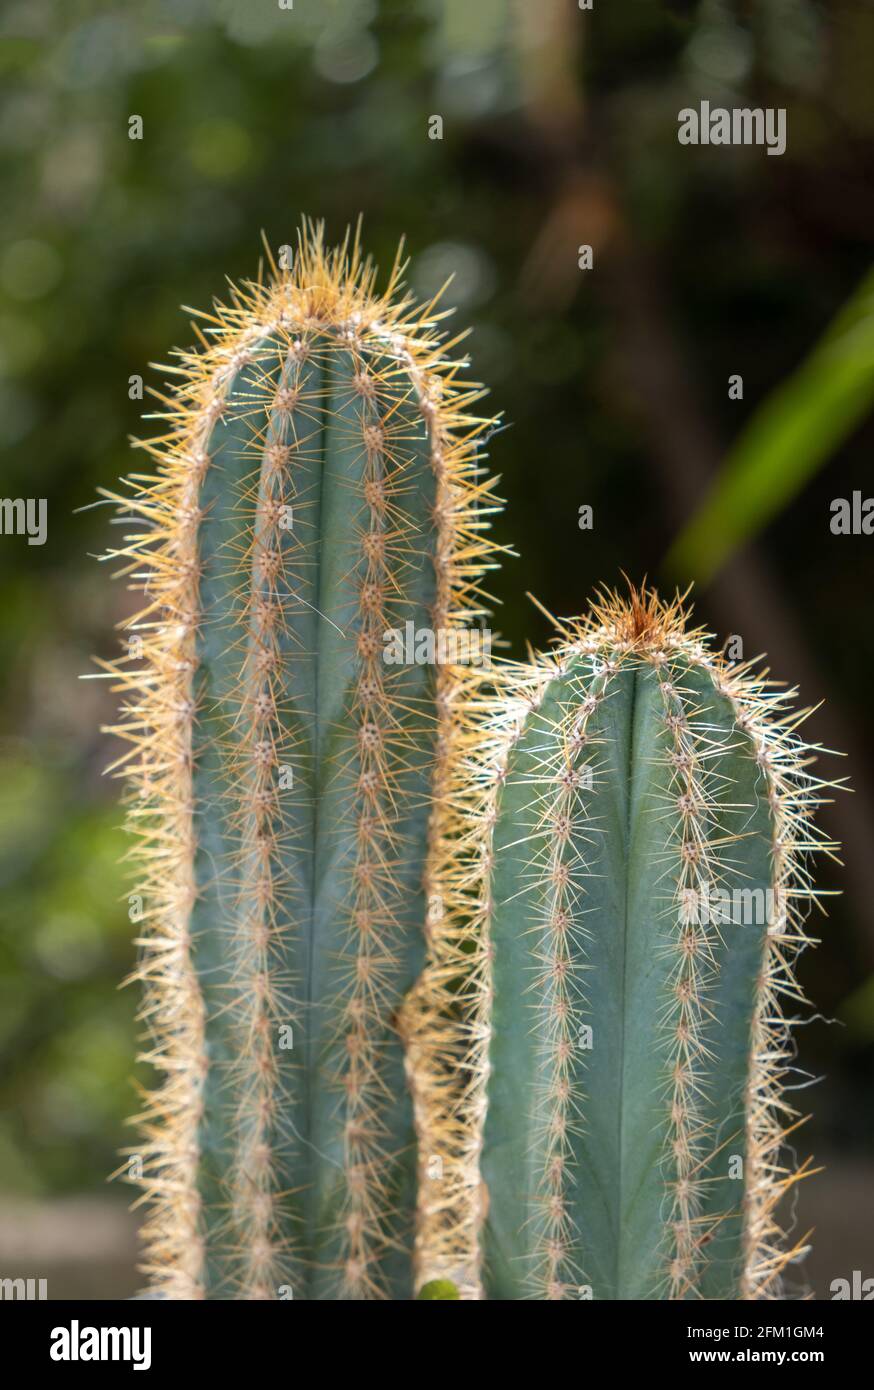 San Pedro Kaktus, trichocereus, echinopsis pachanoi mit Stacheln Hintergrund. Tropische wilde scharfe Dornen Pflanzen, Kakteen, enthalten Meskalin, Halluzinogeni Stockfoto